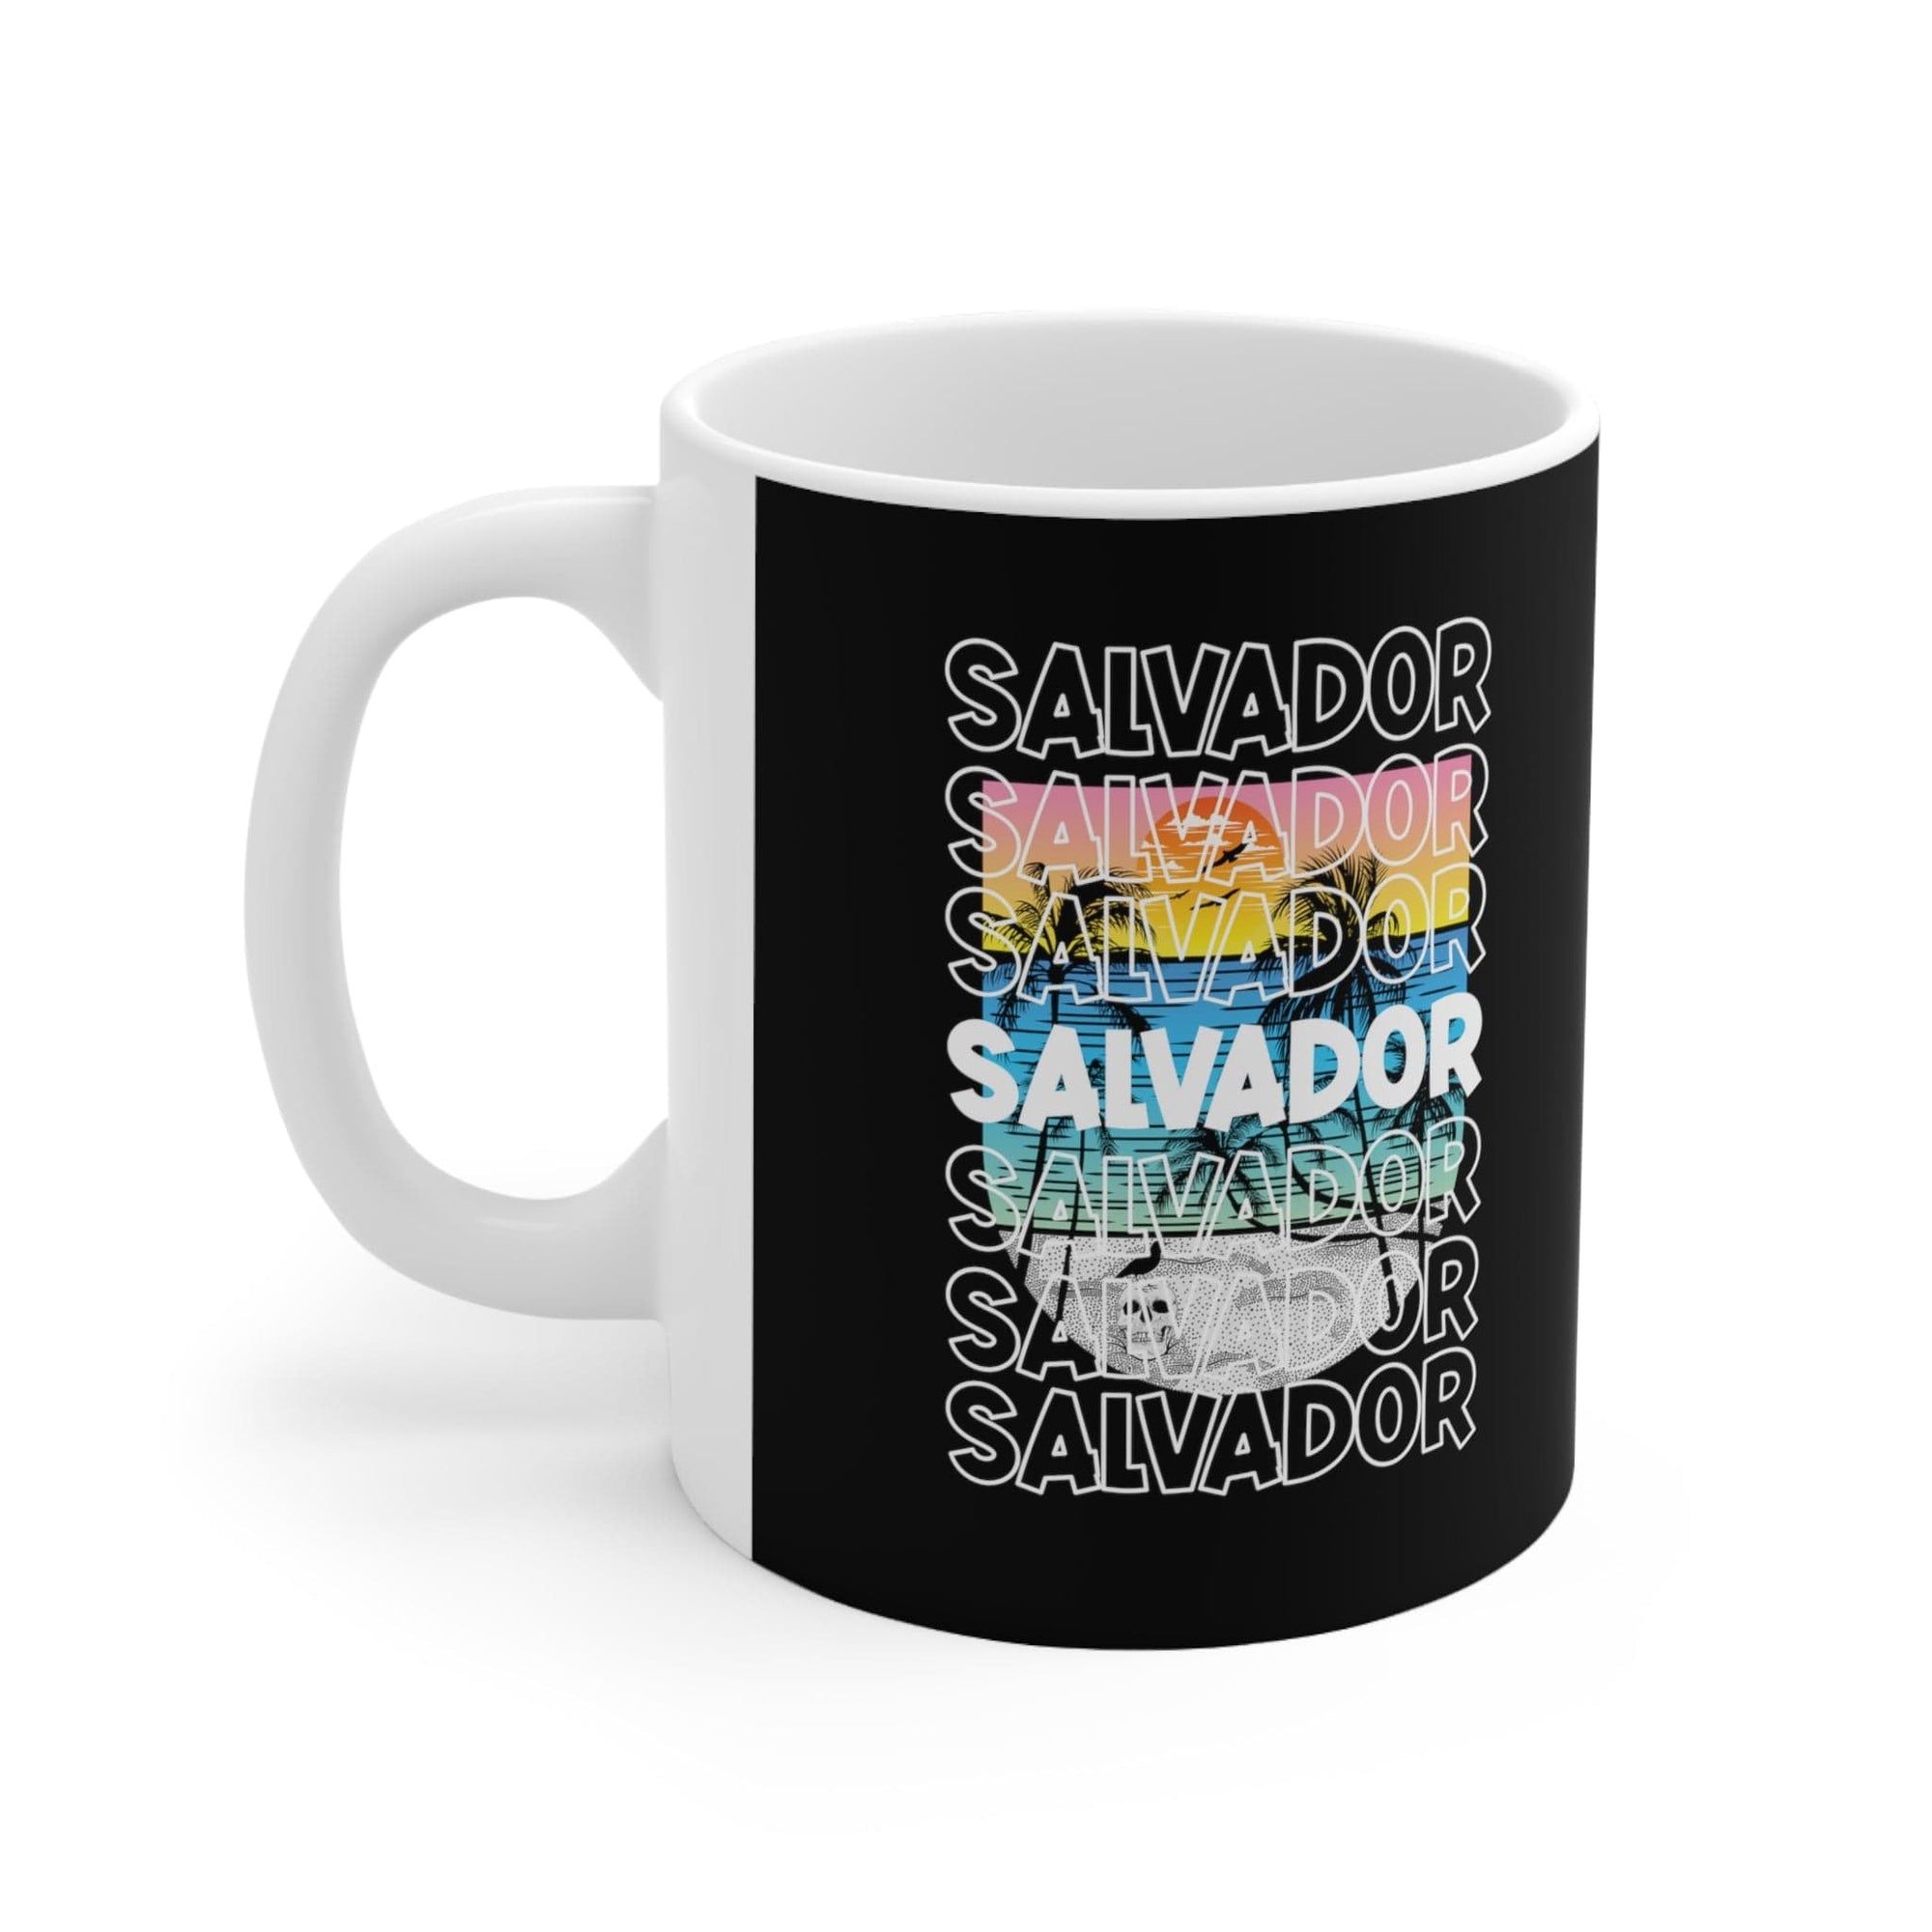 SALVADOR - Awesome Ceramic Mug, Exclusive Design